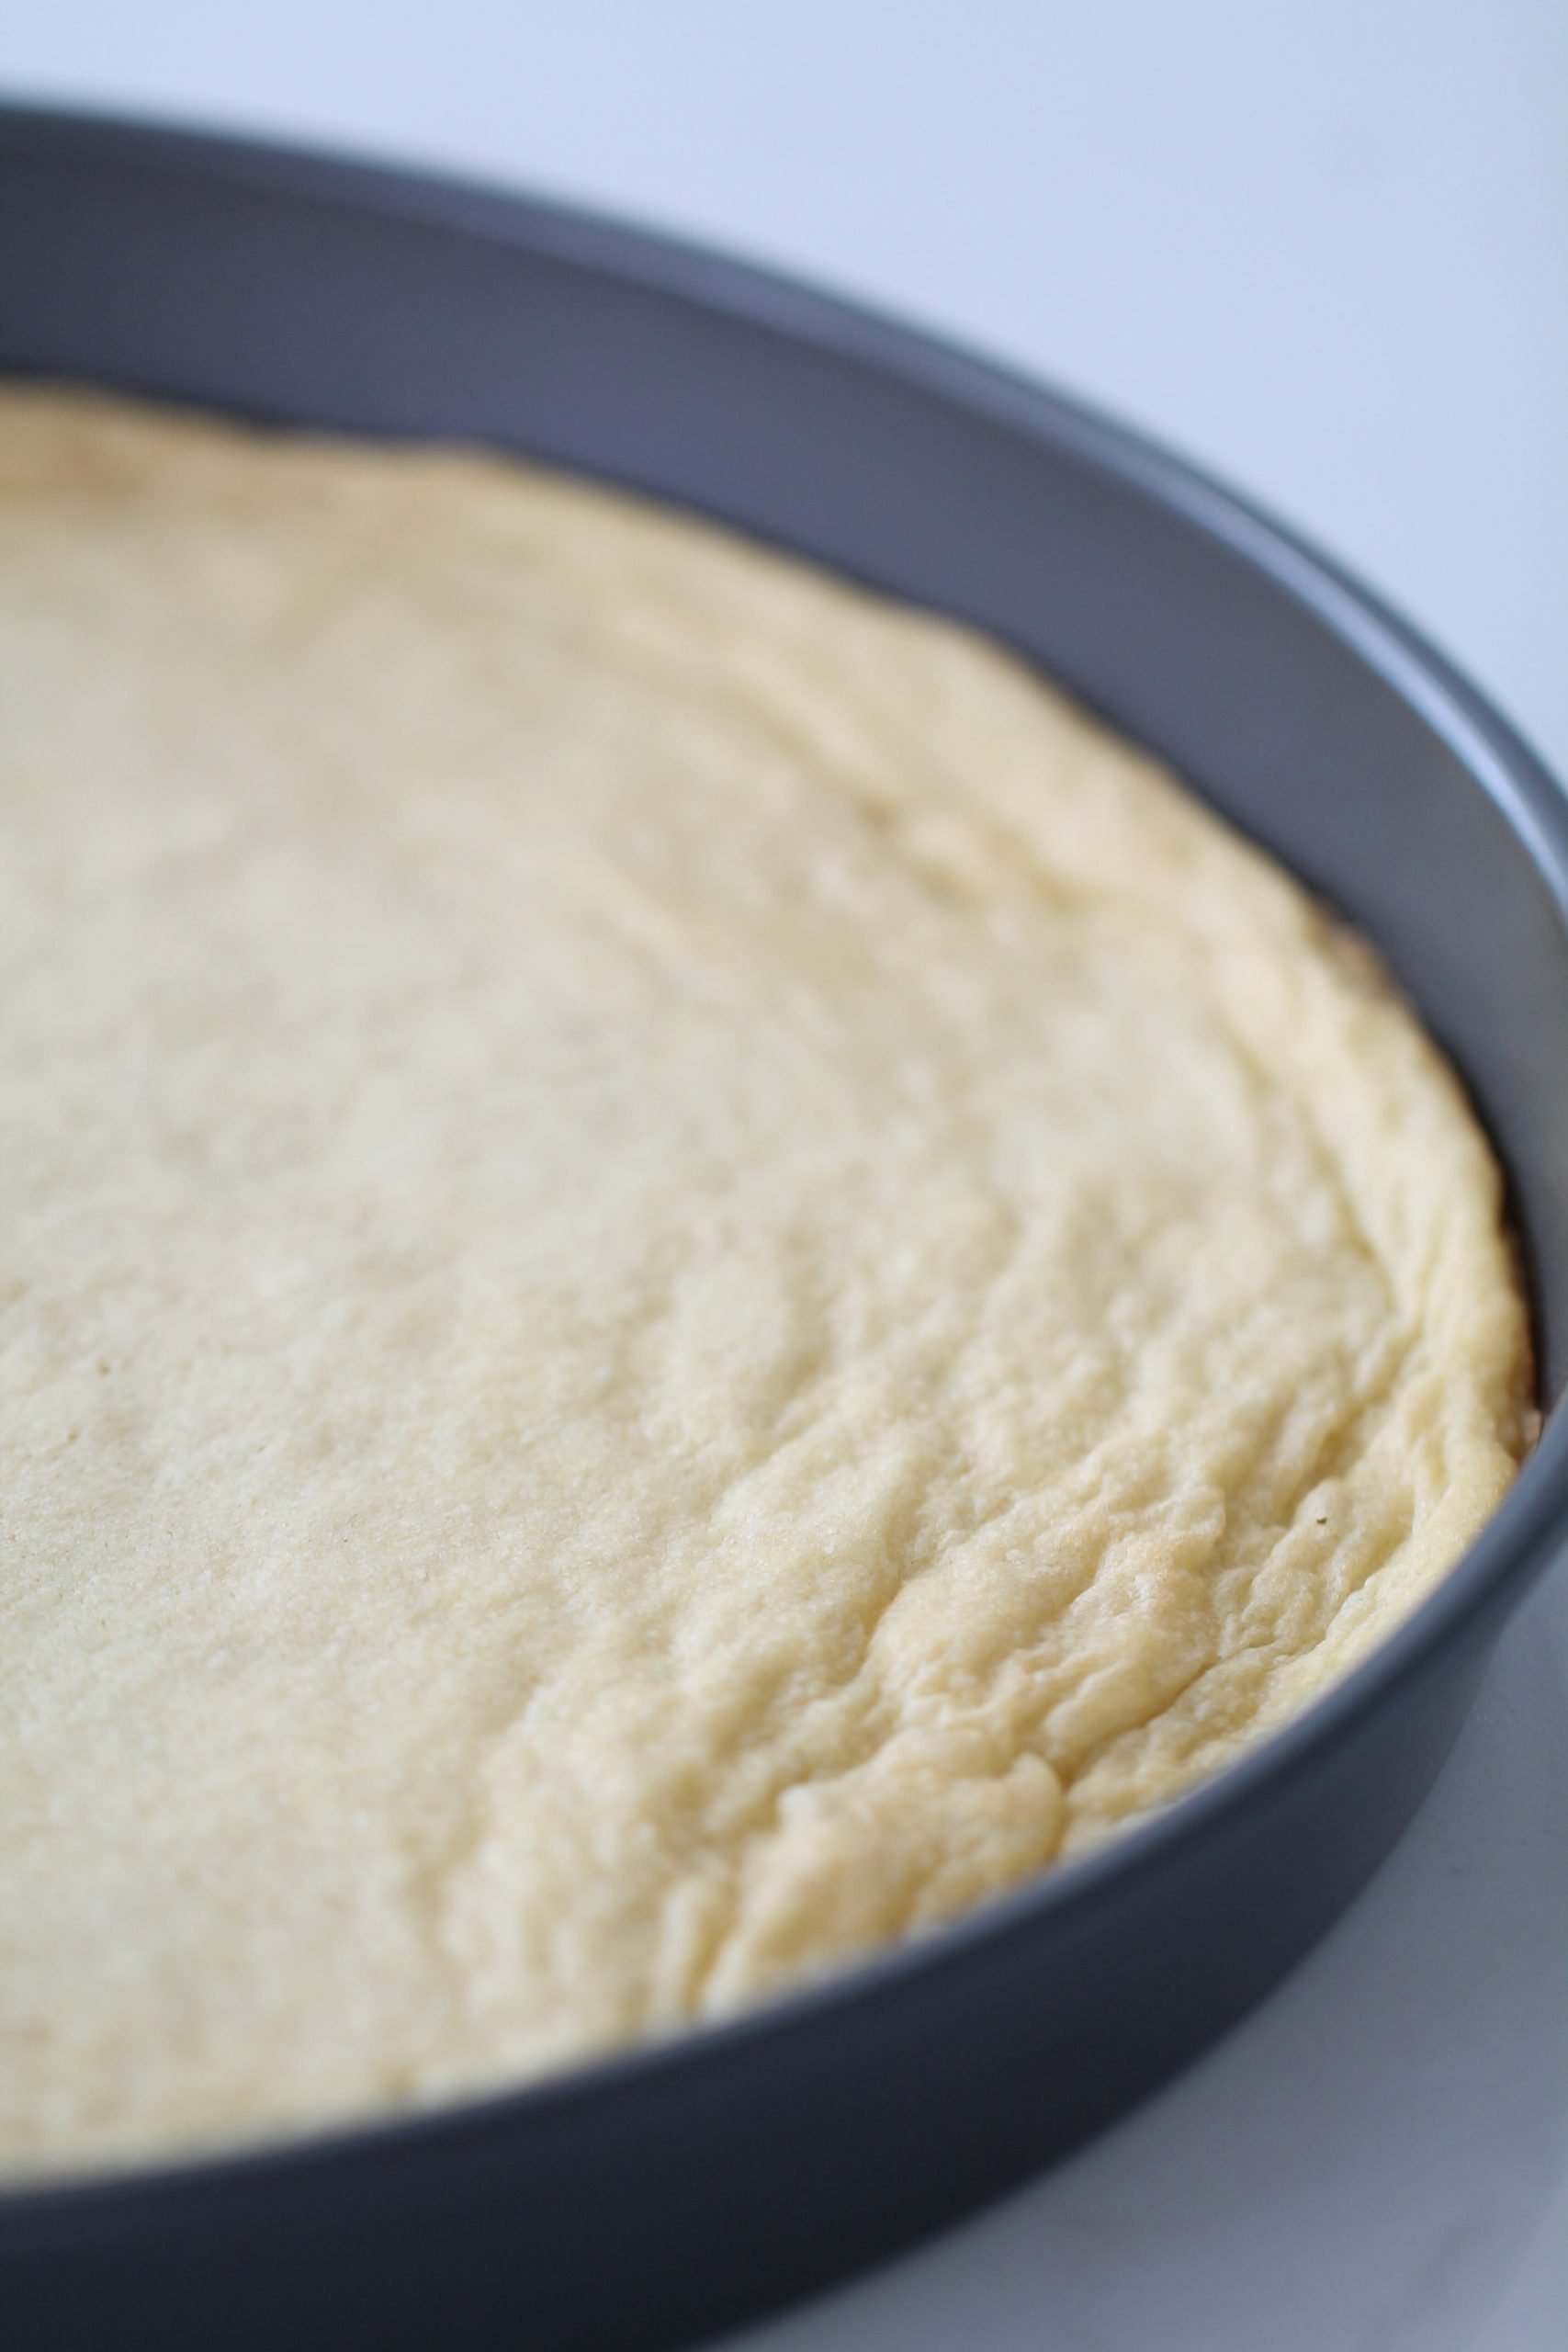 Sugar Cookie crust in pan